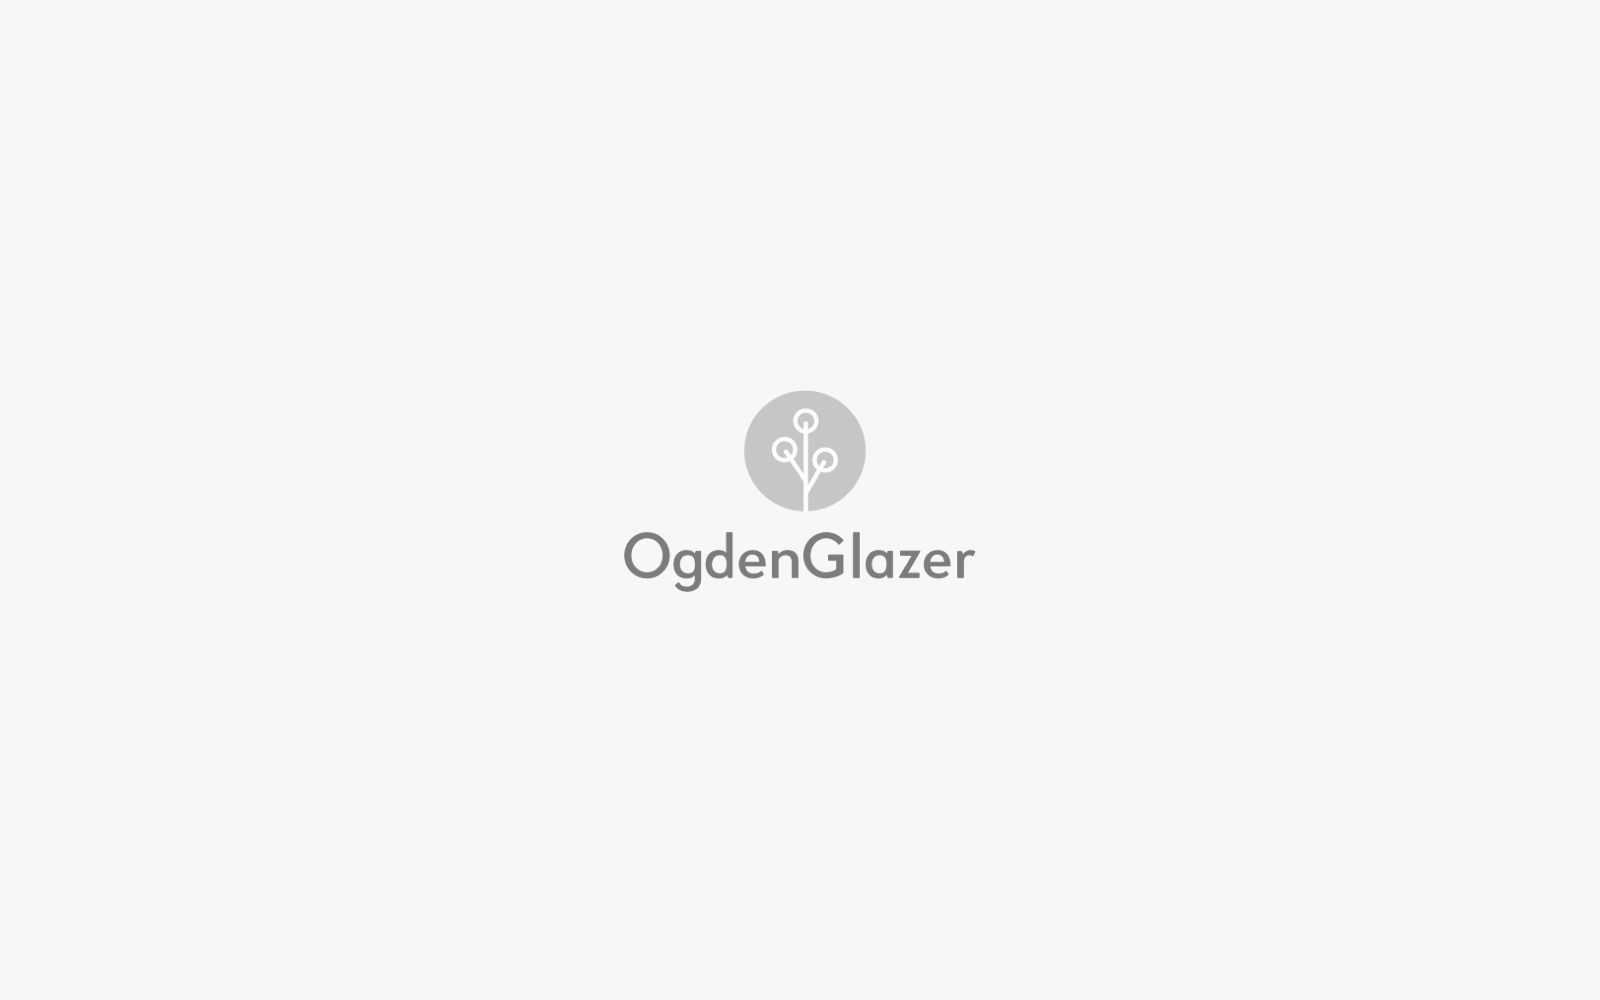 OgdenGlazer Portfolio Logo